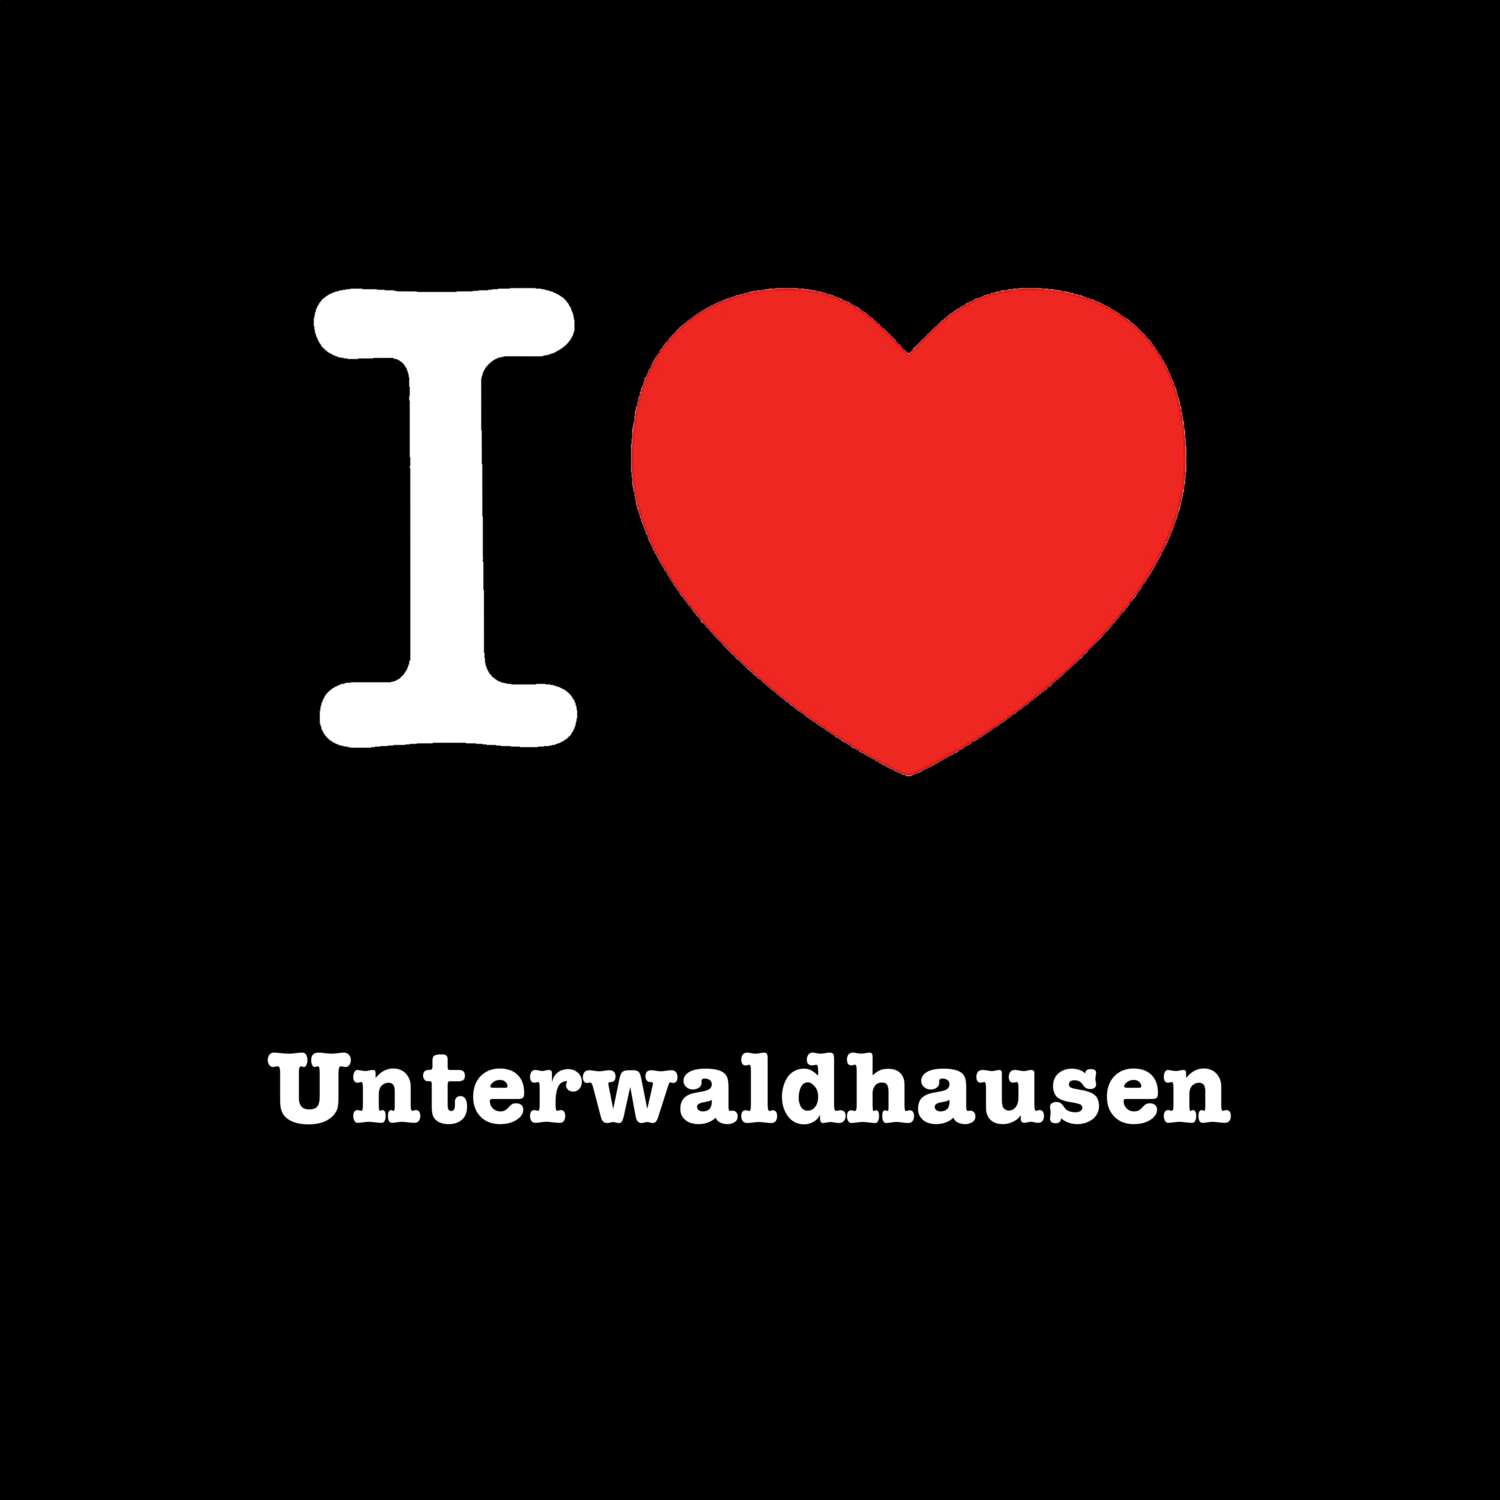 Unterwaldhausen T-Shirt »I love«